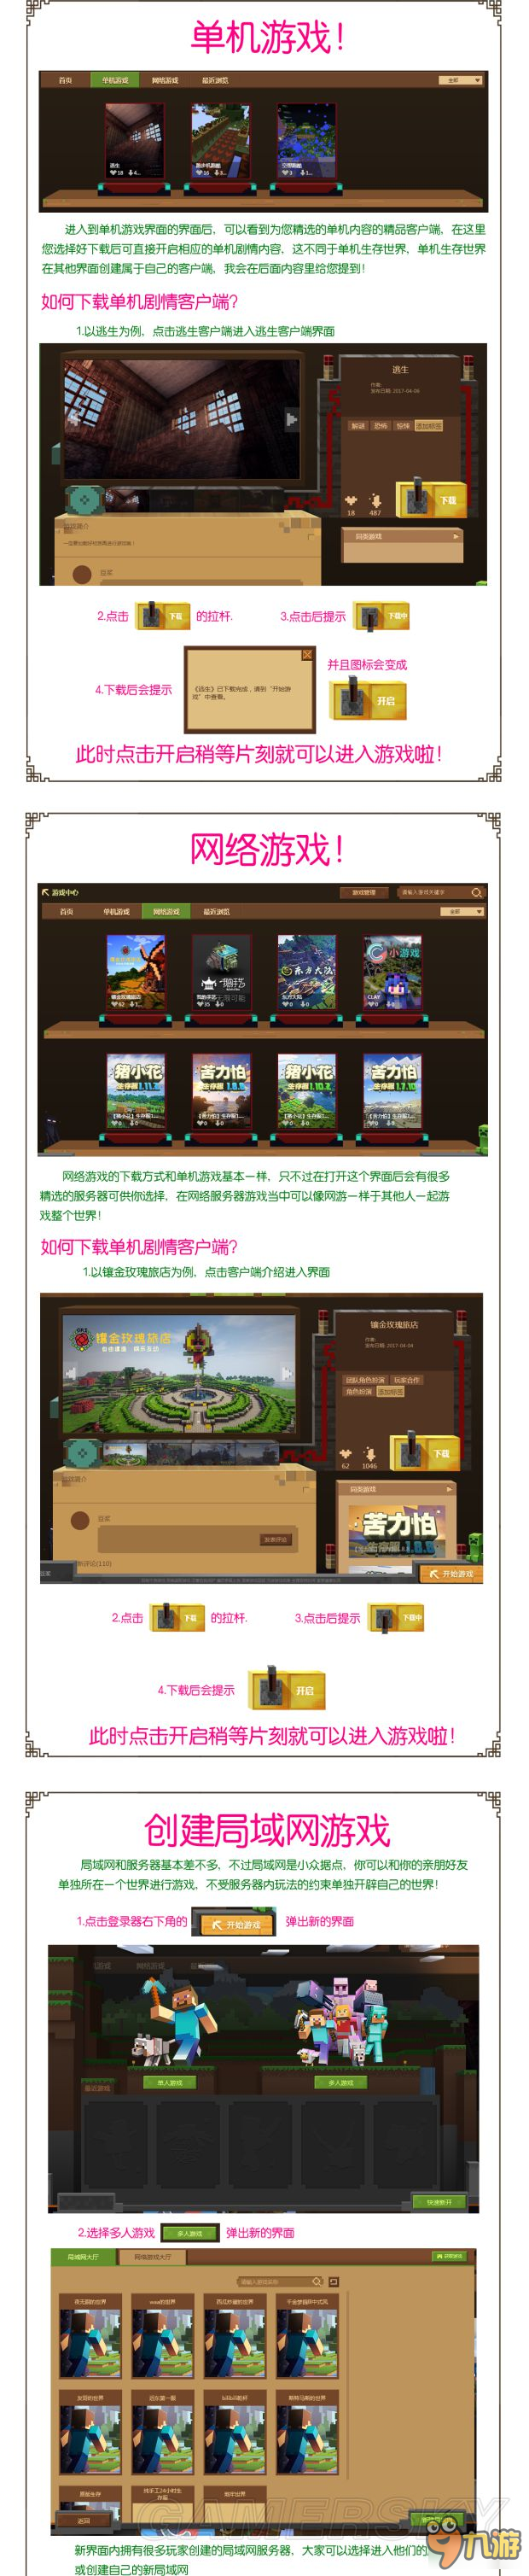 《我的世界中国版》中国版启动器游戏中心、组件等内容全方位介绍